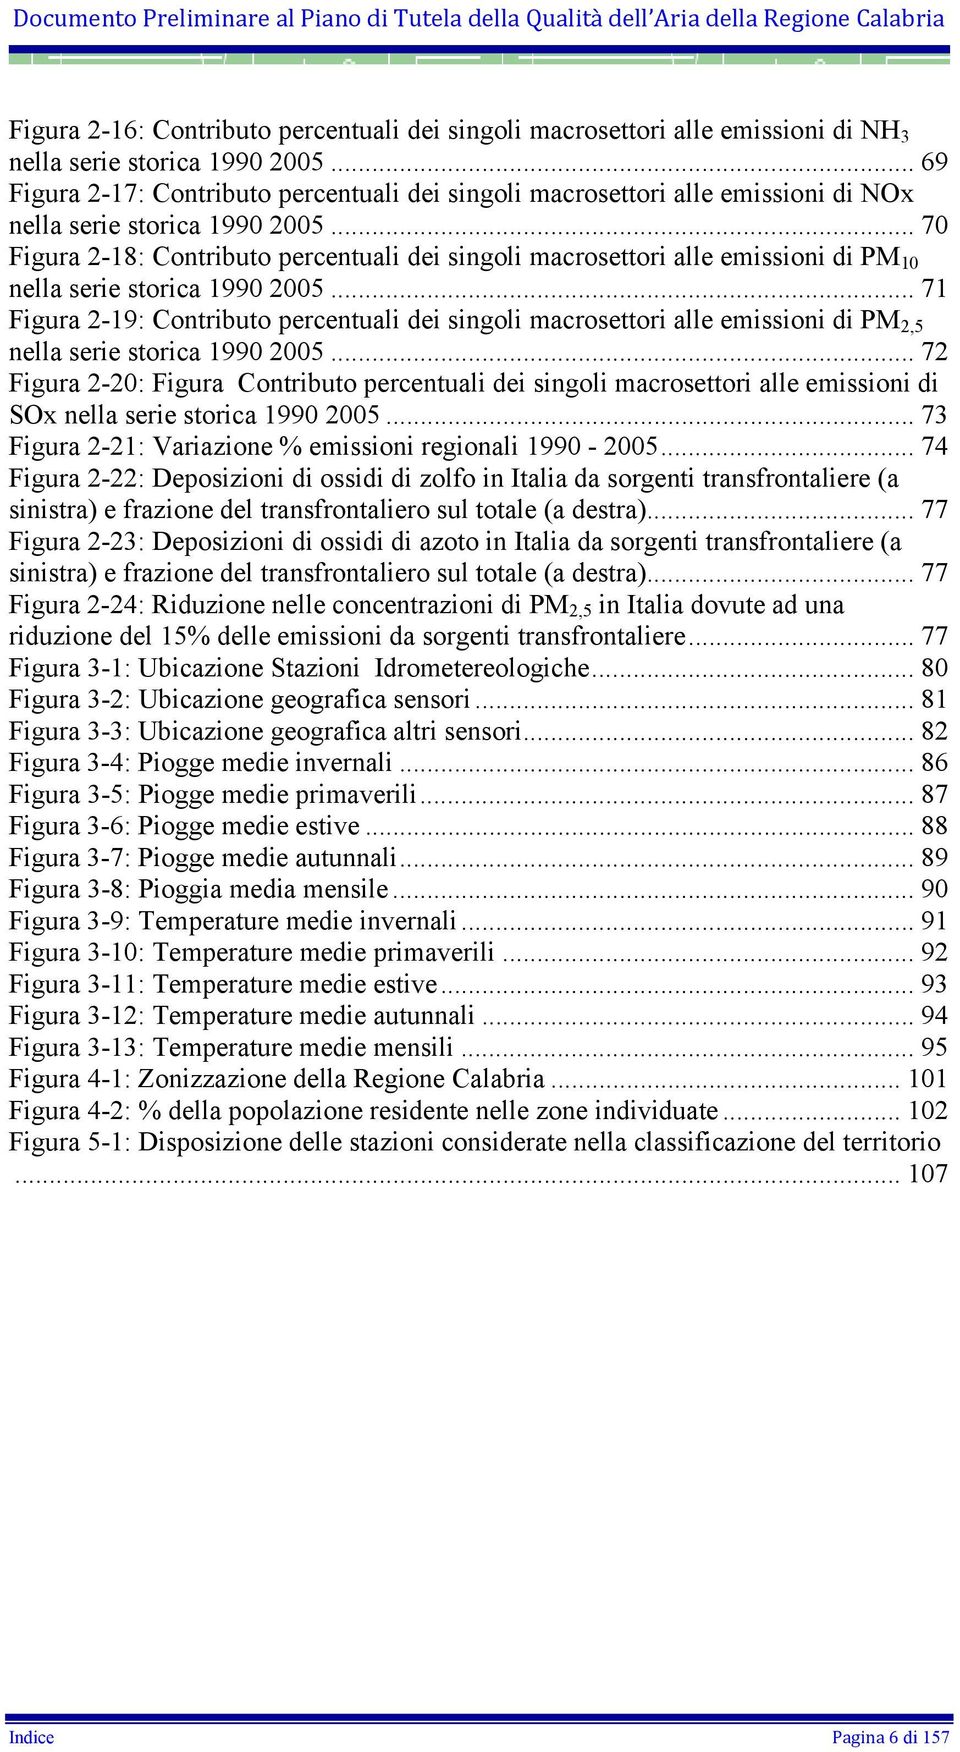 .. 70 Figura 2-18: Contributo percentuali dei singoli macrosettori alle emissioni di PM 10 nella serie storica 1990 2005.